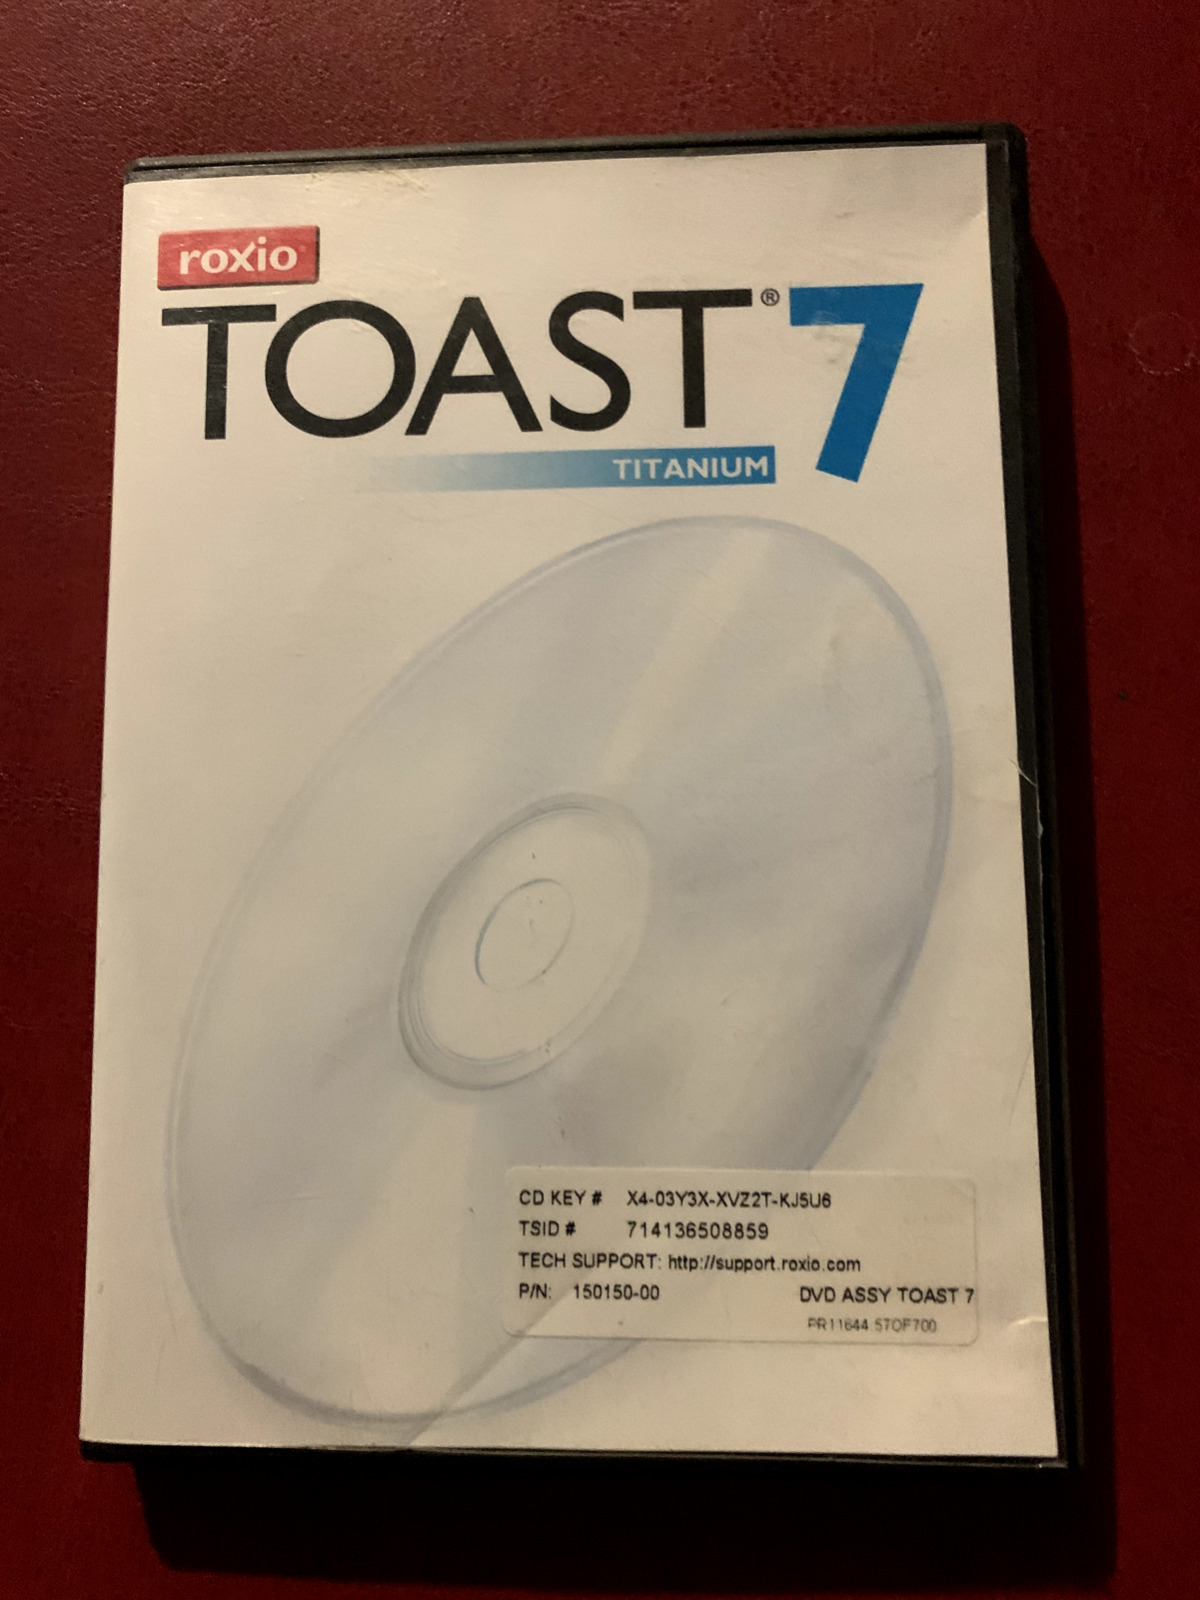 Roxio Toast 7 Titanium (Mac) w/ CD Product KEY and Original Plastic Case